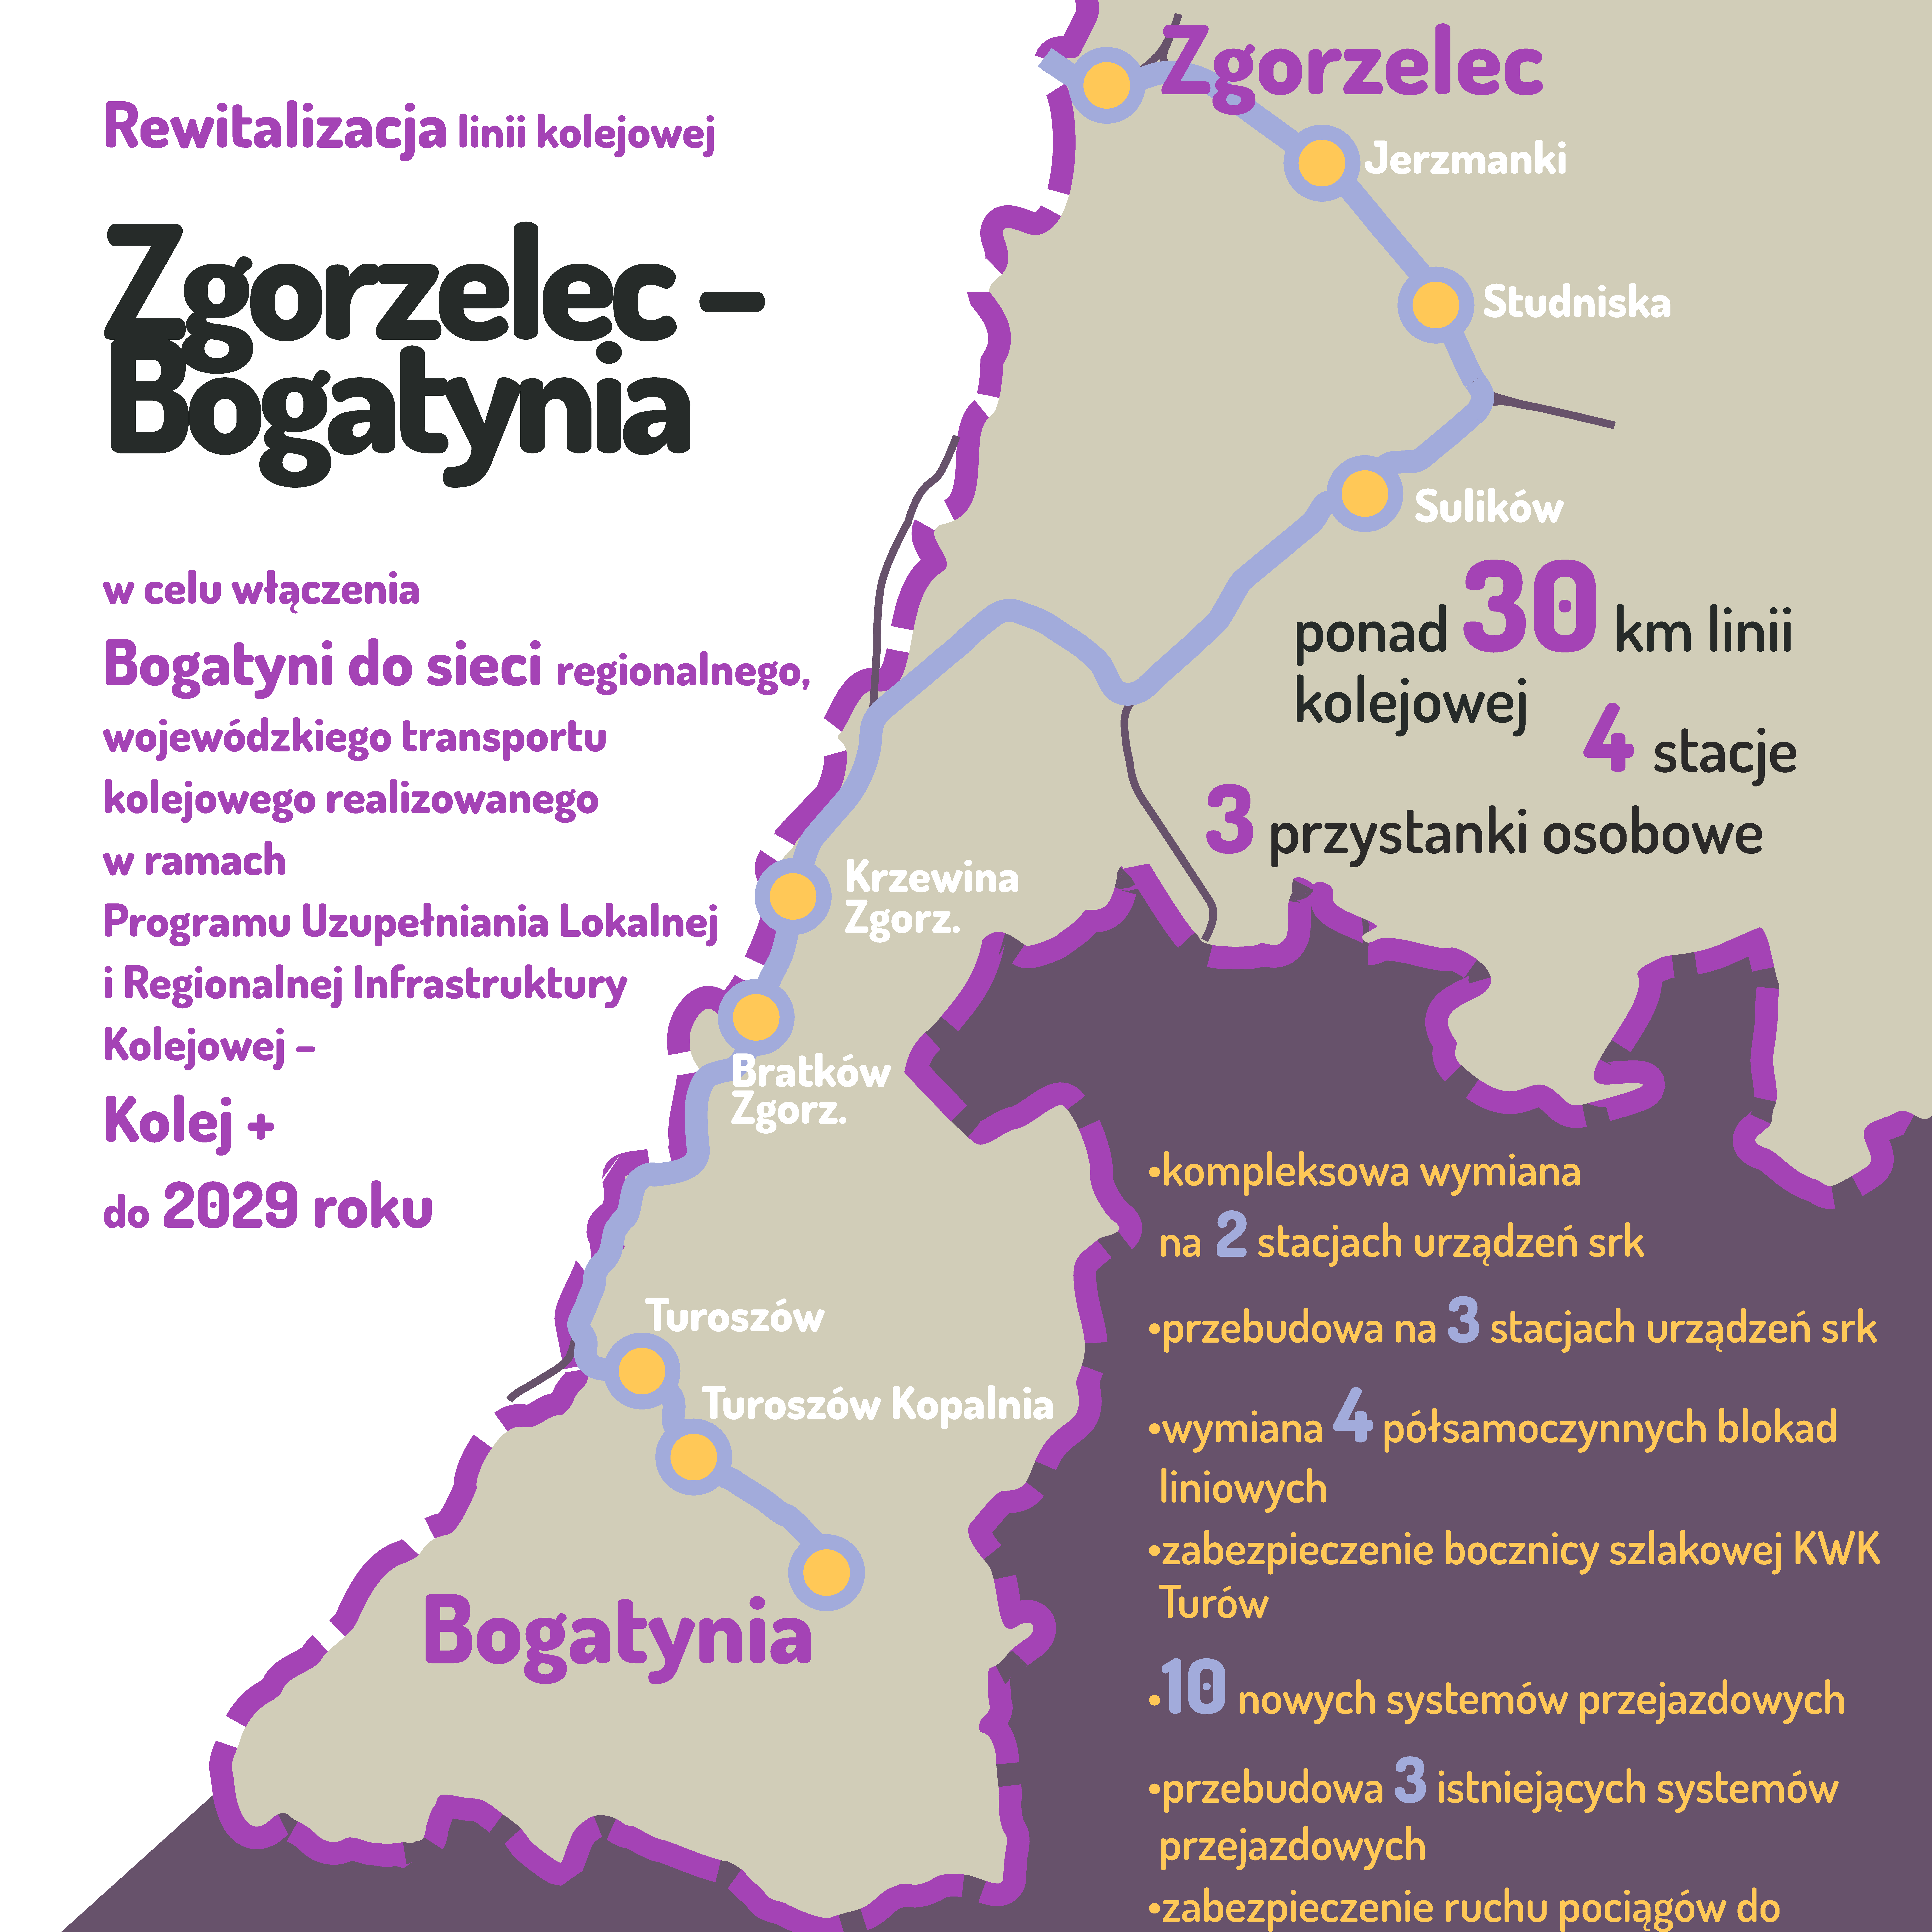 Rewitalizacja linii kolejowej Zgorzelec-Bogatynia